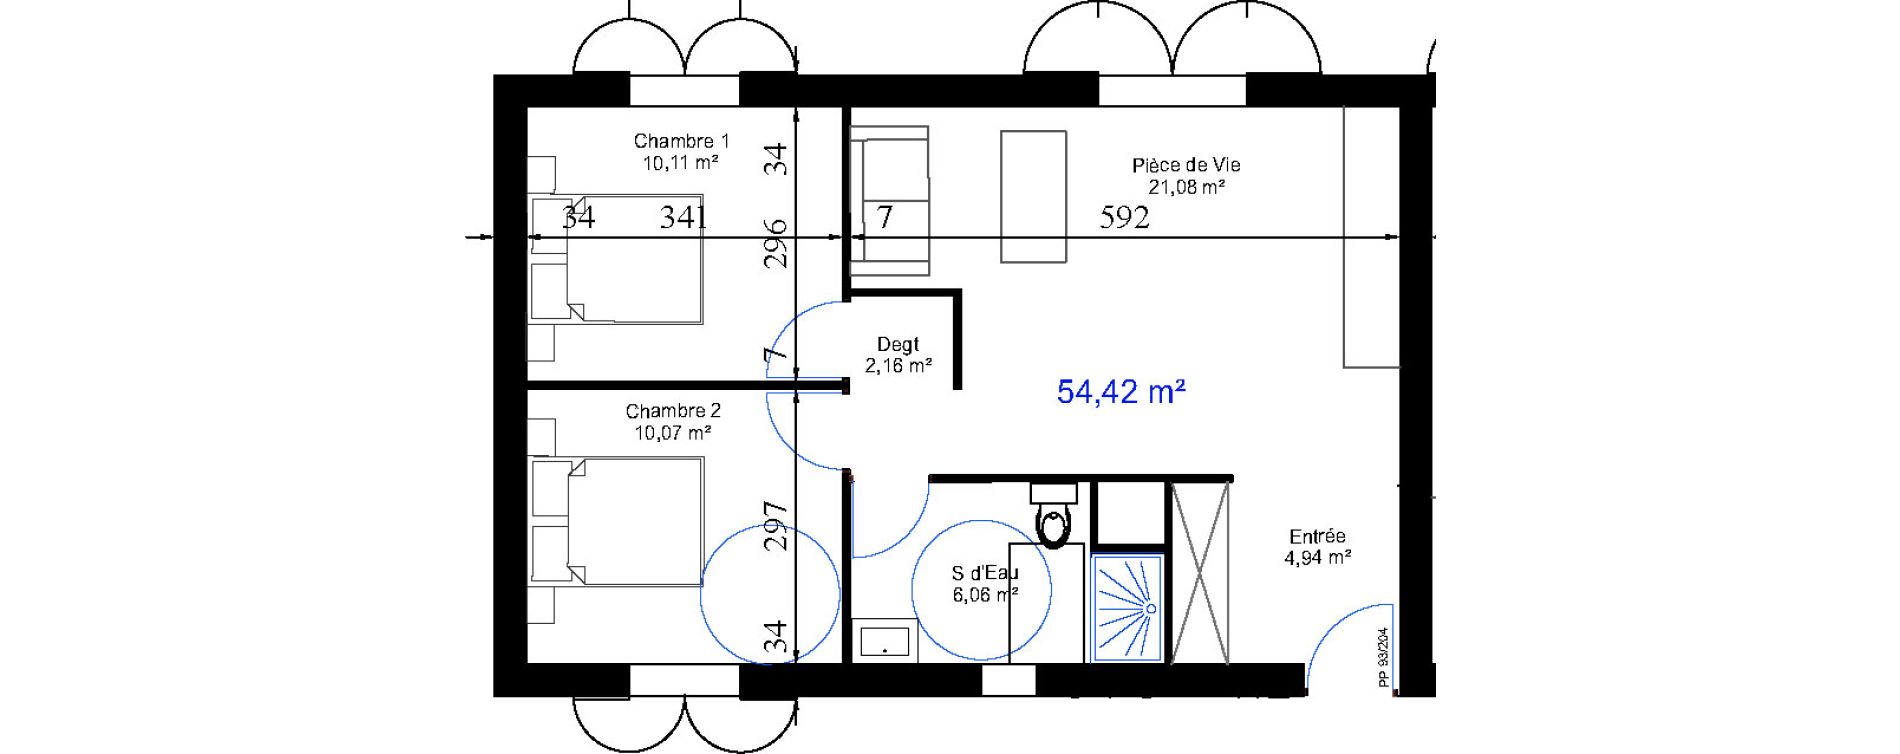 Appartement T3 de 54,42 m2 aux Sables-D'Olonne Le chateau d olonne